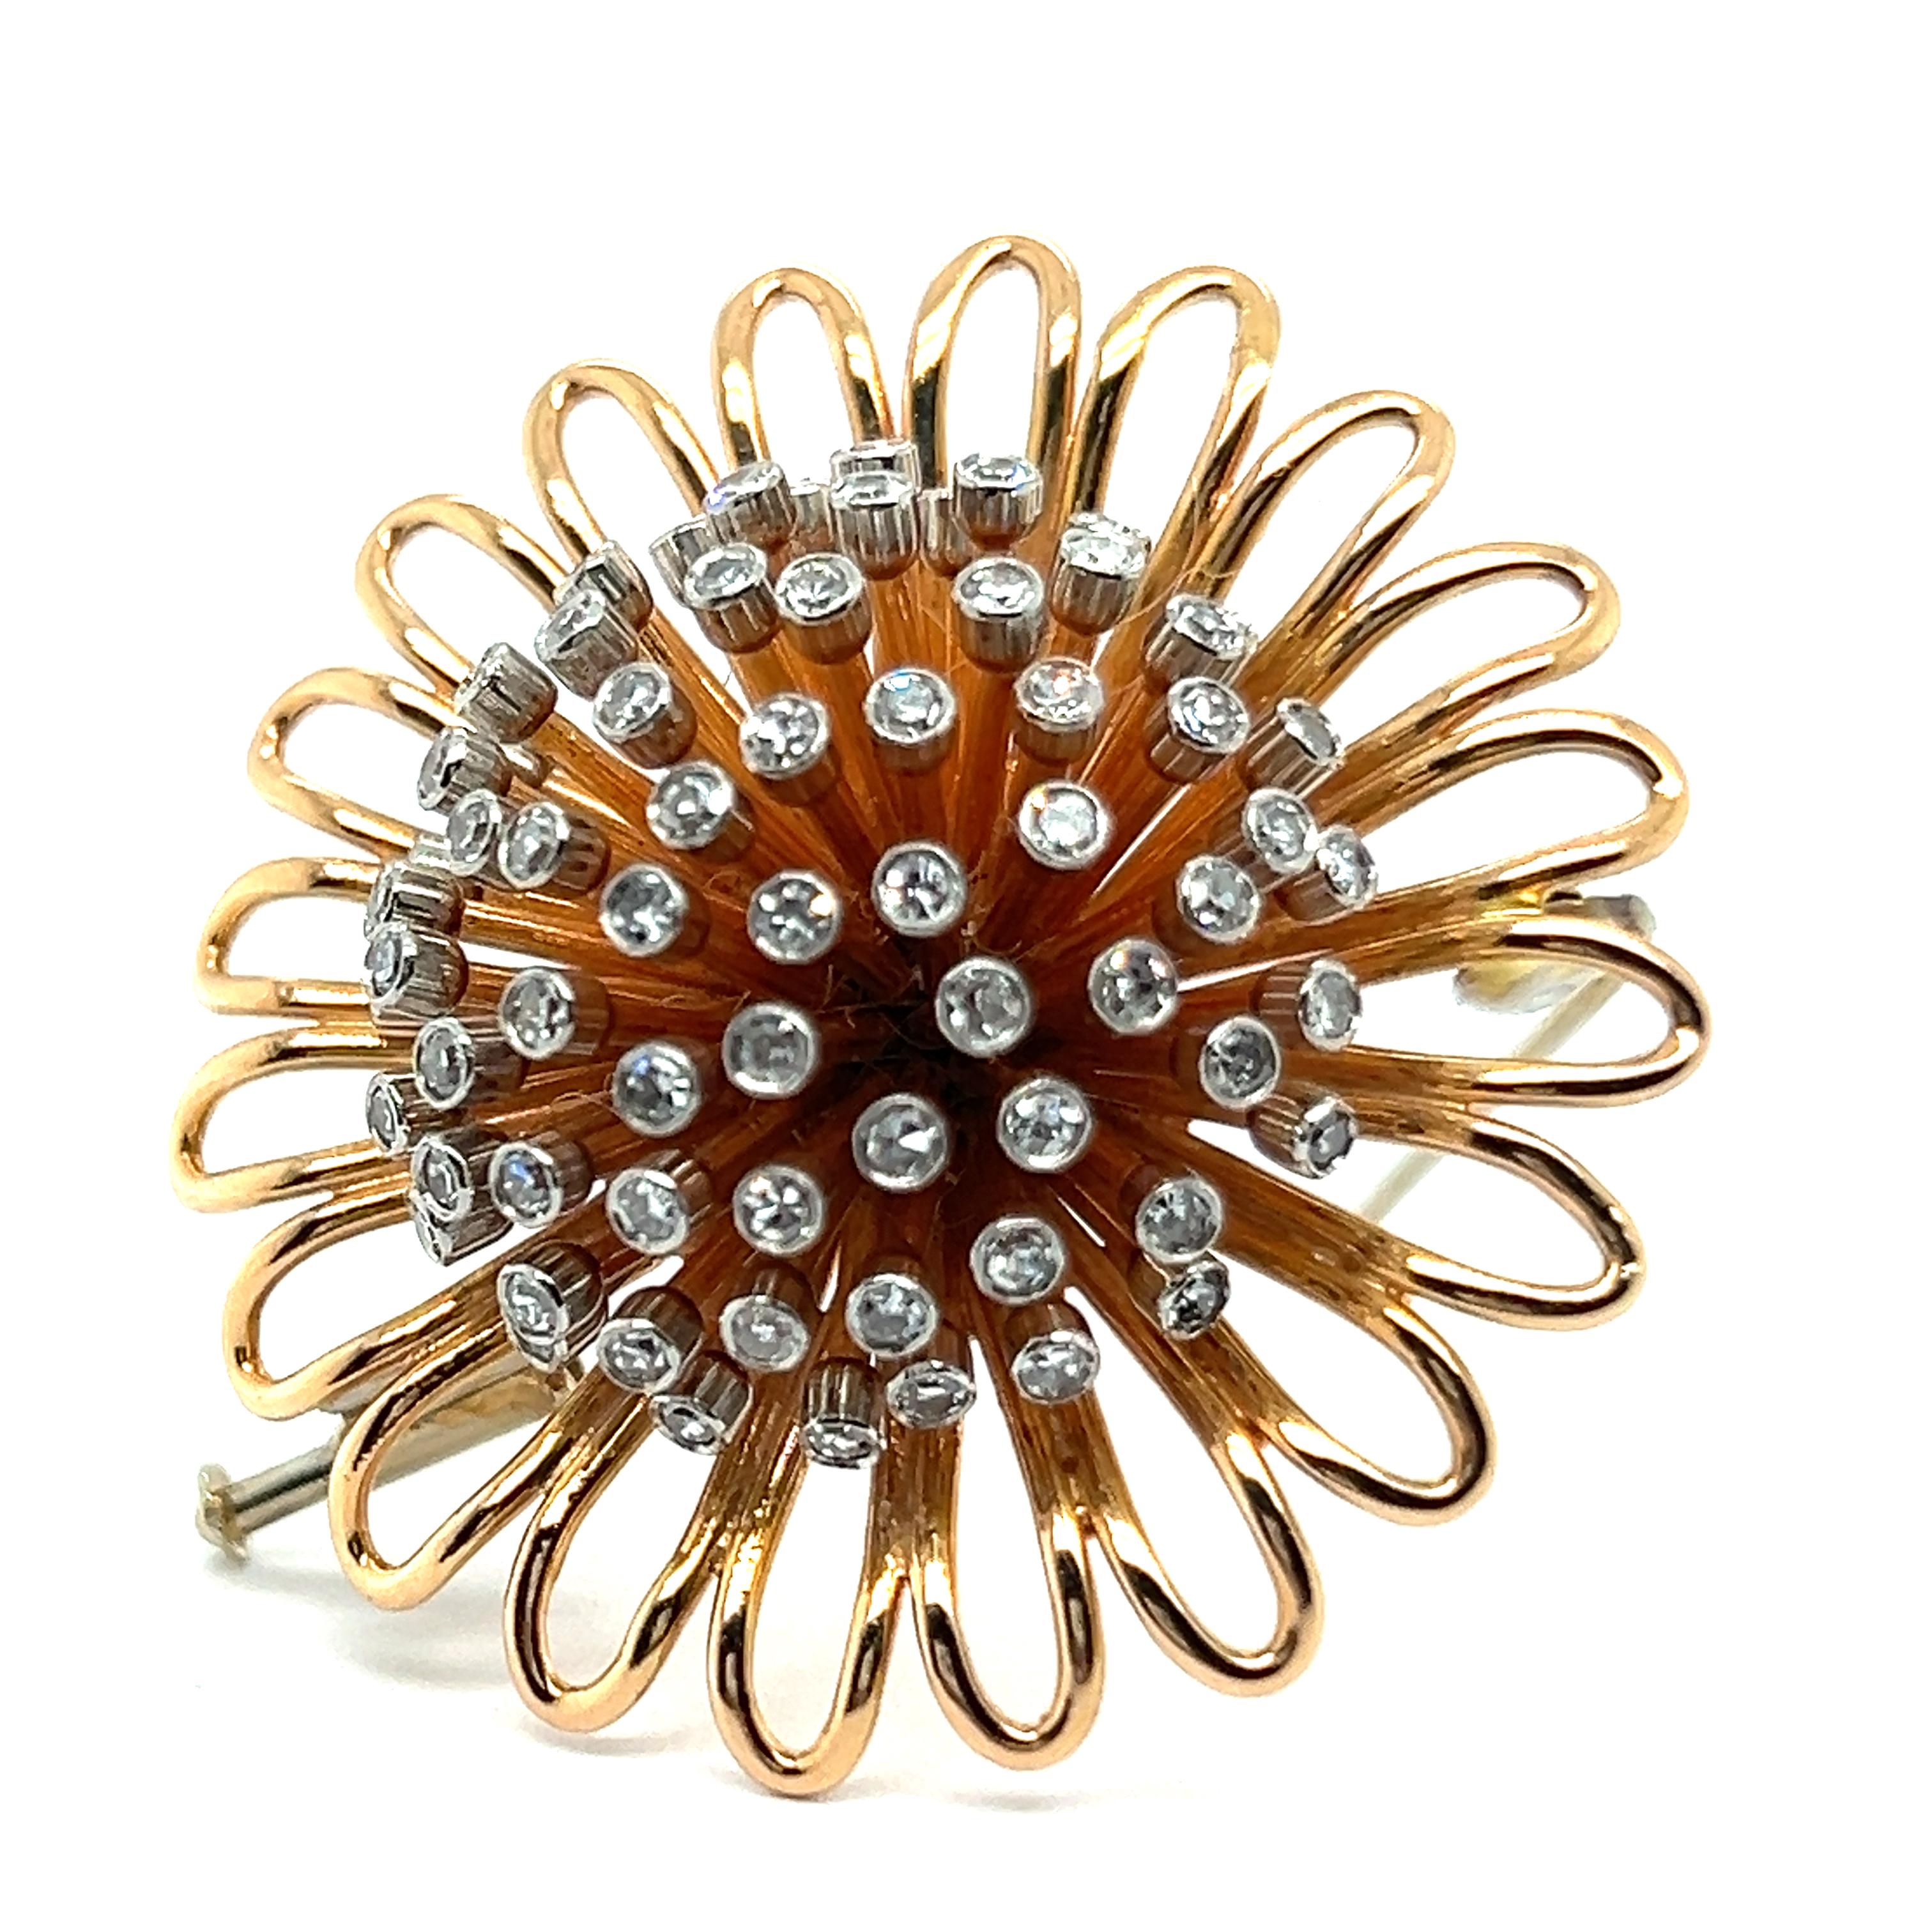 Wir präsentieren eine auffällige Brosche des visionären Schweizer Juweliers Meinrad Burch-Korrodi. Er ist aus 18 Karat Rot- und Weißgold gefertigt und mit 70 Diamanten im 8/8-Schliff von insgesamt 1,80 Karat besetzt. 

Der innovative Ansatz von